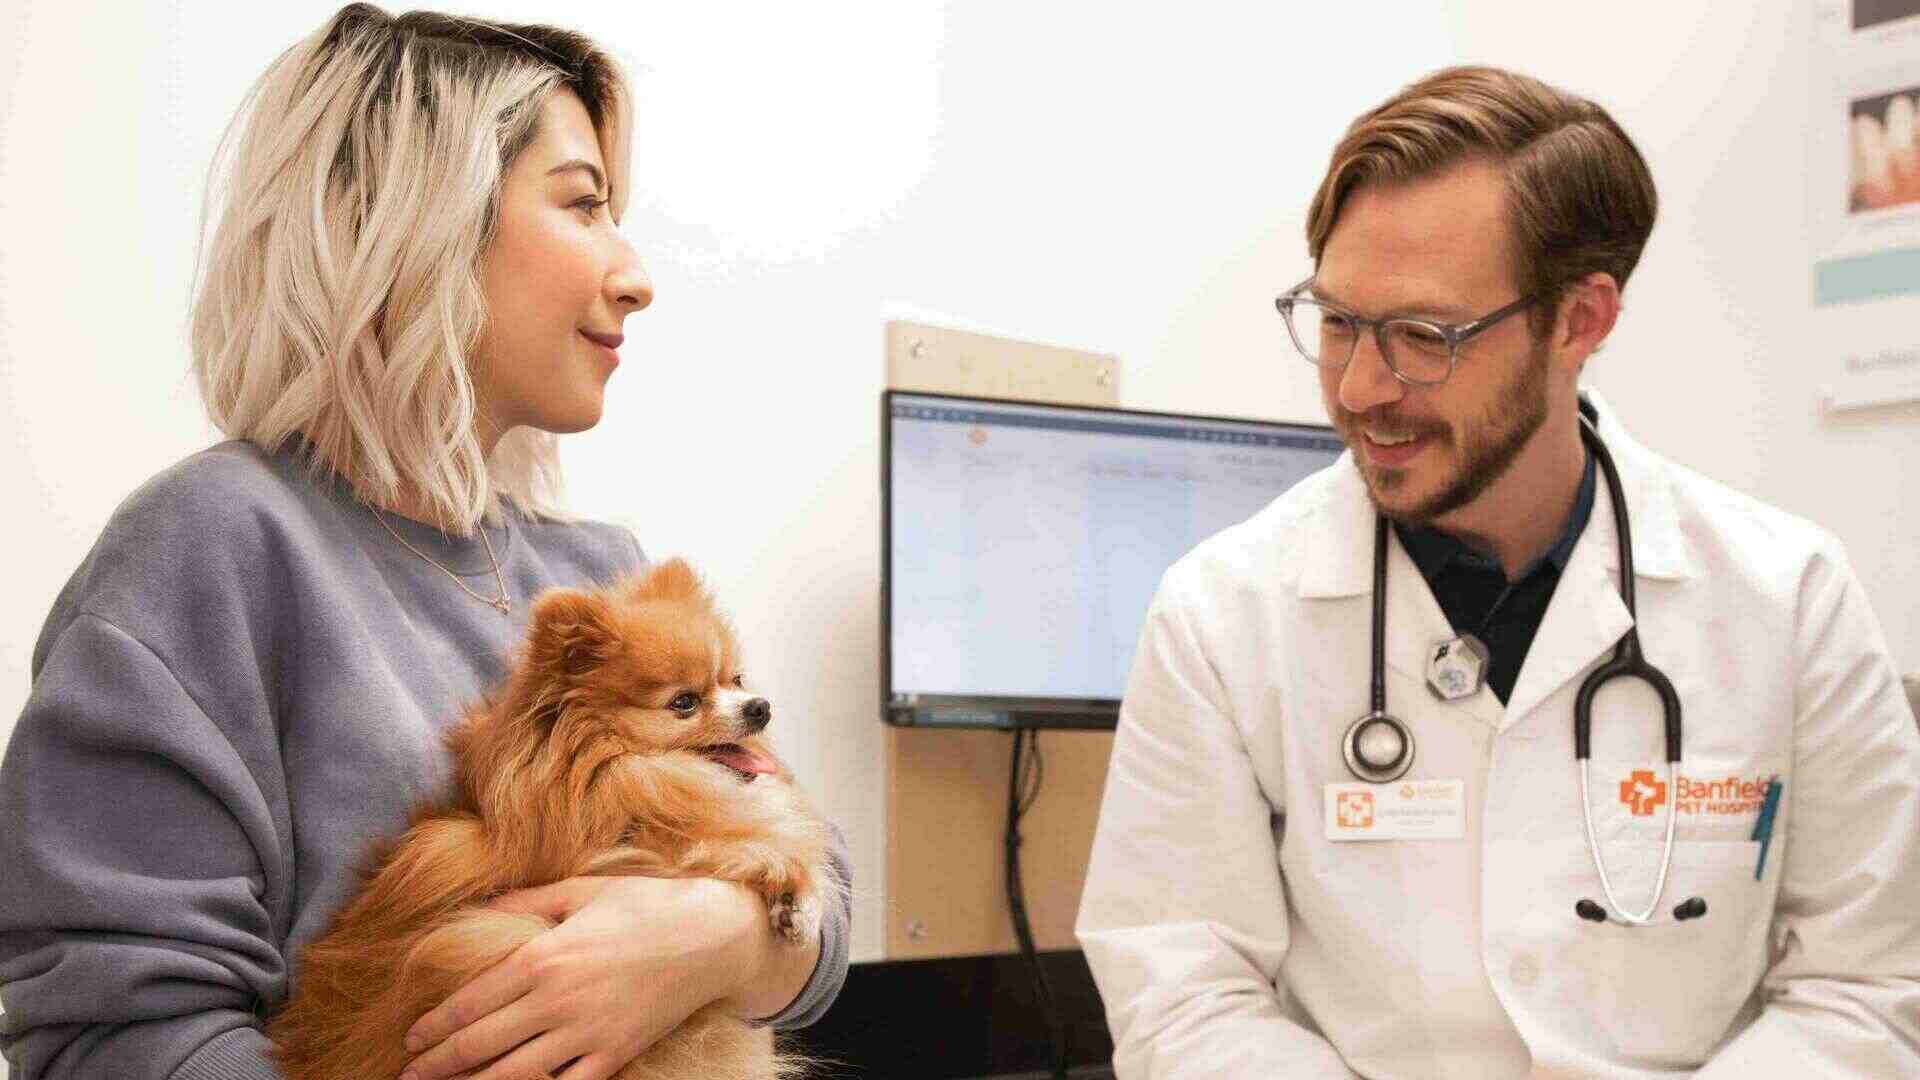 Pets V care Animal Hospital - Newsroom | Banfield Pet Hospital®